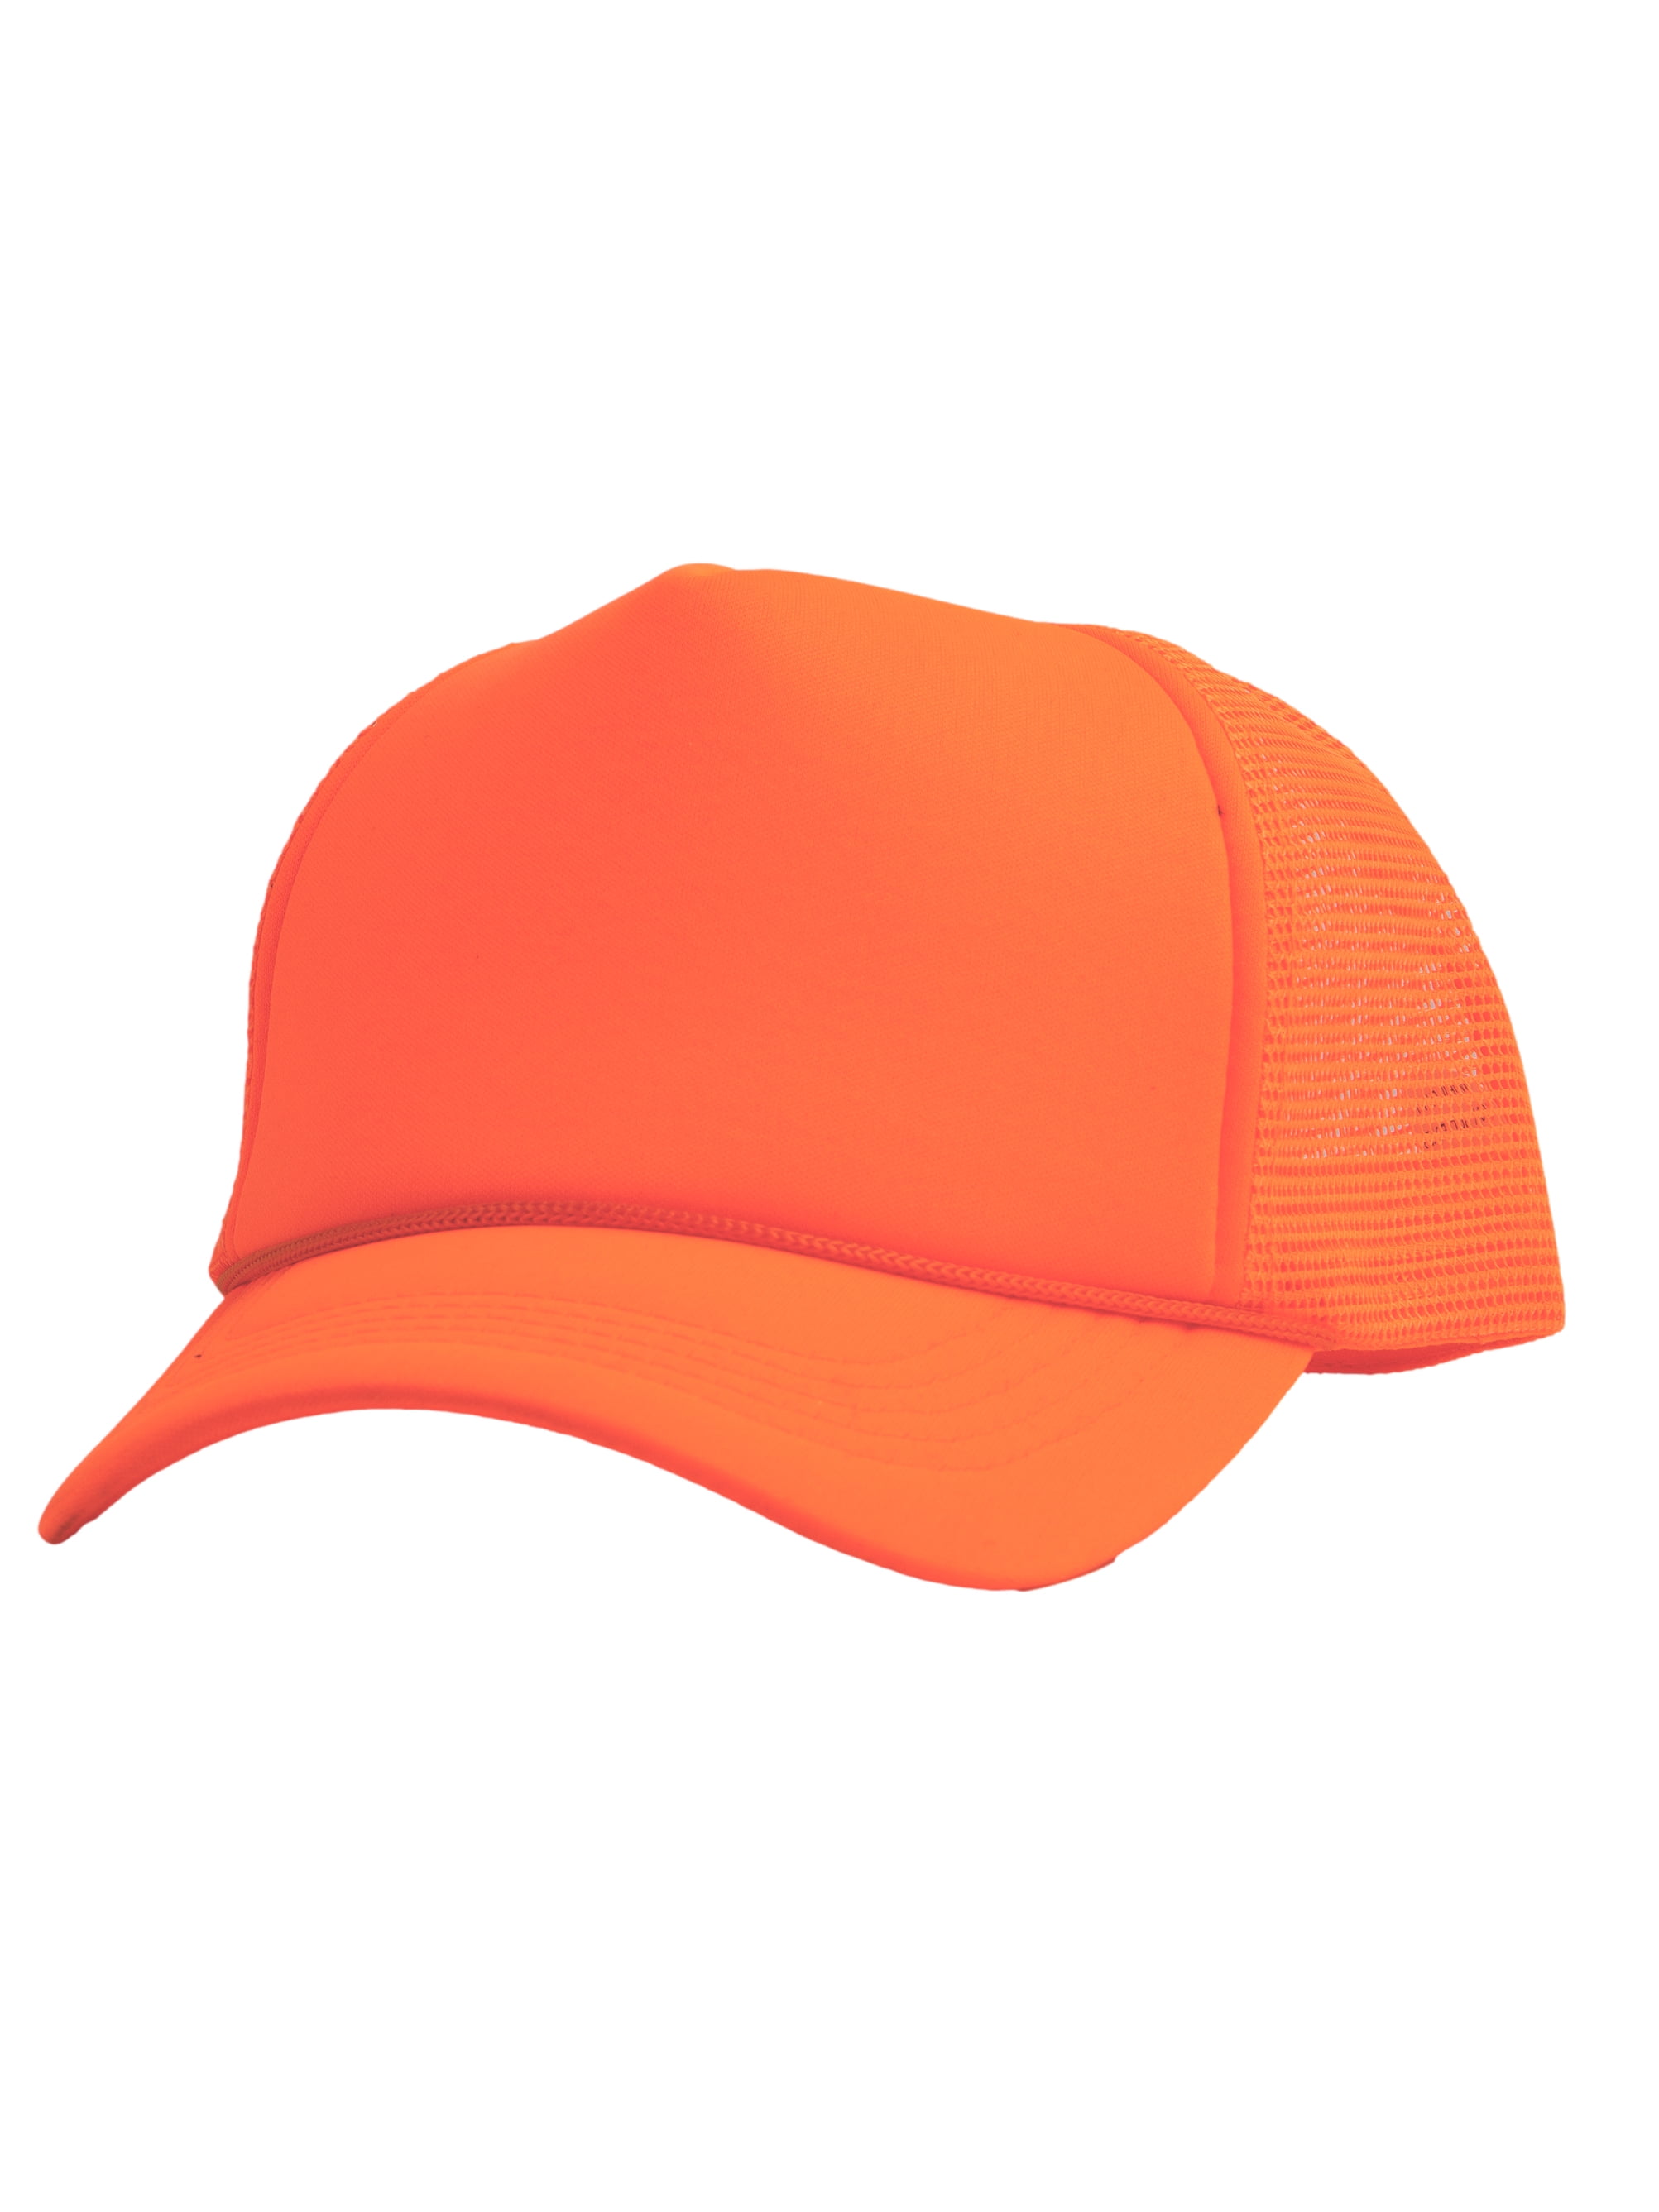 Foam Hat Mens Trucker Orange Headwear Mesh Top - Blank Trucker Hats Neon Snapback